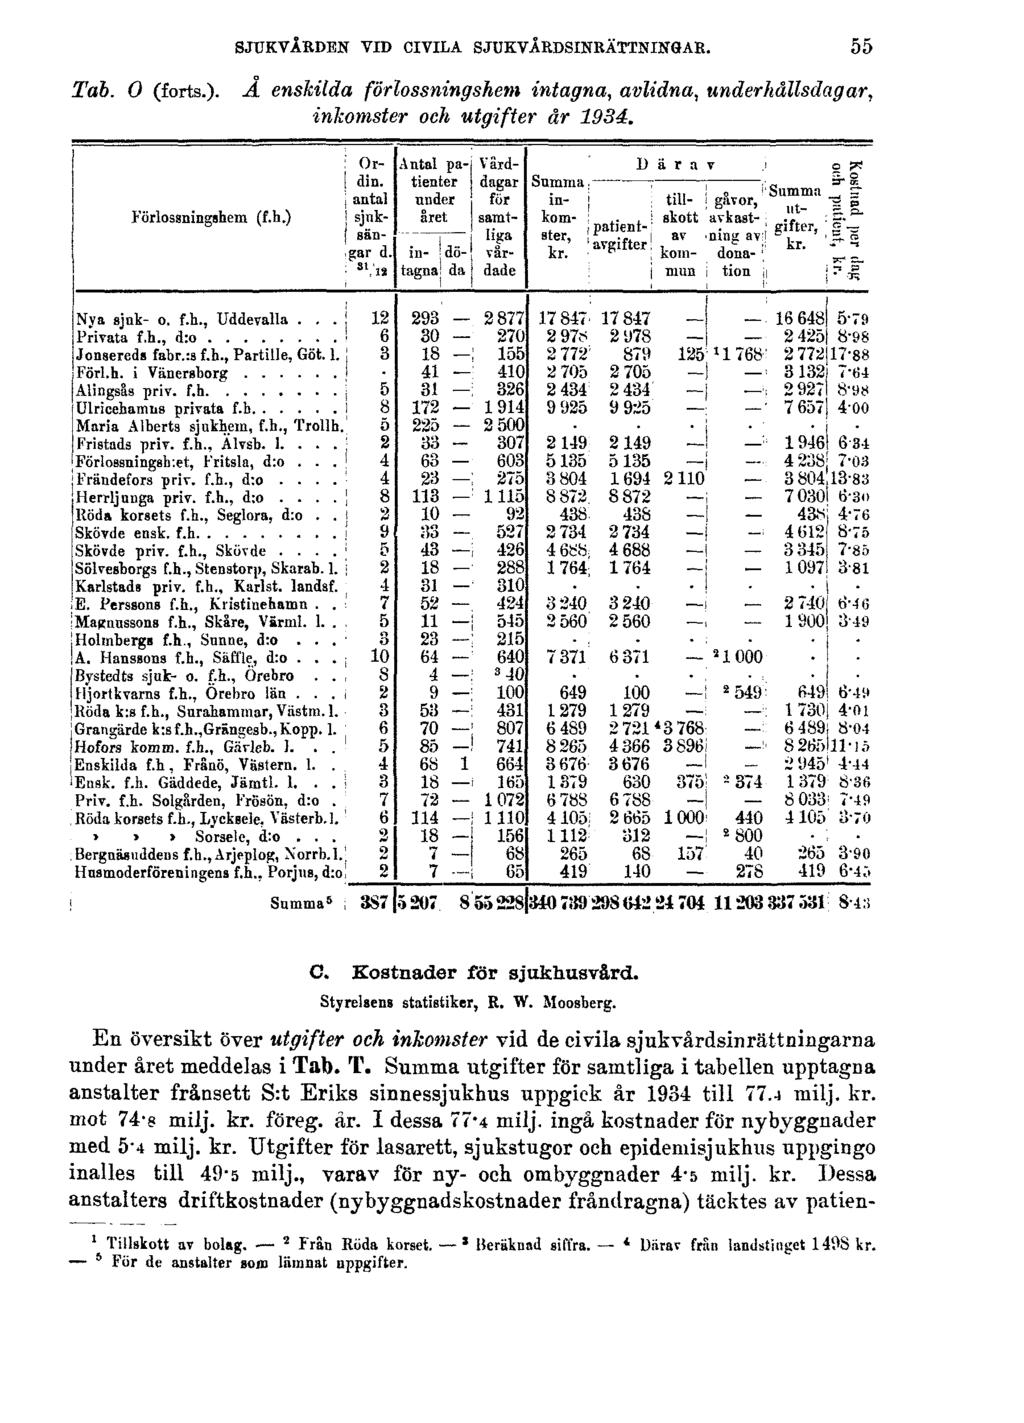 SJUKVÅRDEN VID CIVILA SJUKVÅRDSINRÄTTNINGAR. Tab. O (forts.). Å enskilda förlossningshem intagna, avlidna, underhållsdagar, inkomster och utgifter år 1934. 55 C. Kostnader för sjukhusvård.